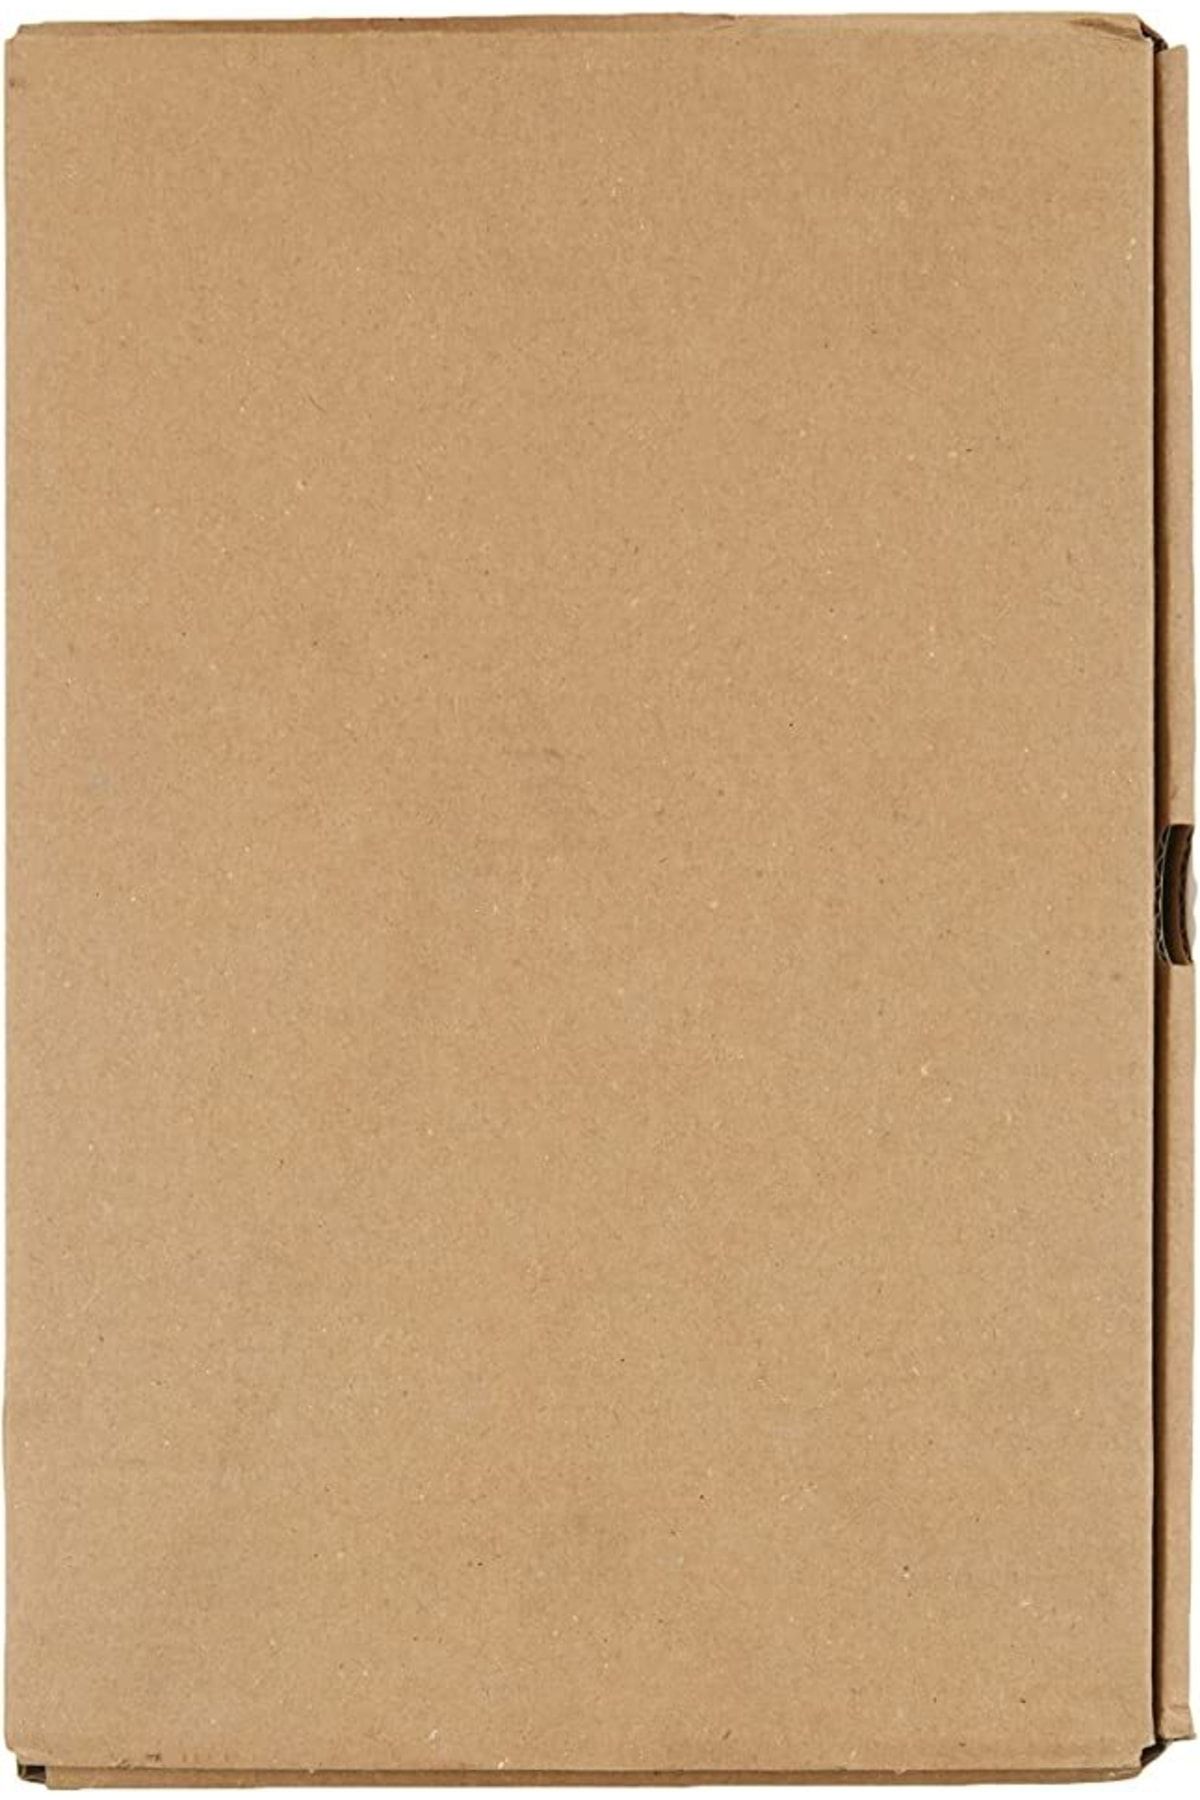 Leitz Askılı Dosya Teli, 250li Paket, 61300012